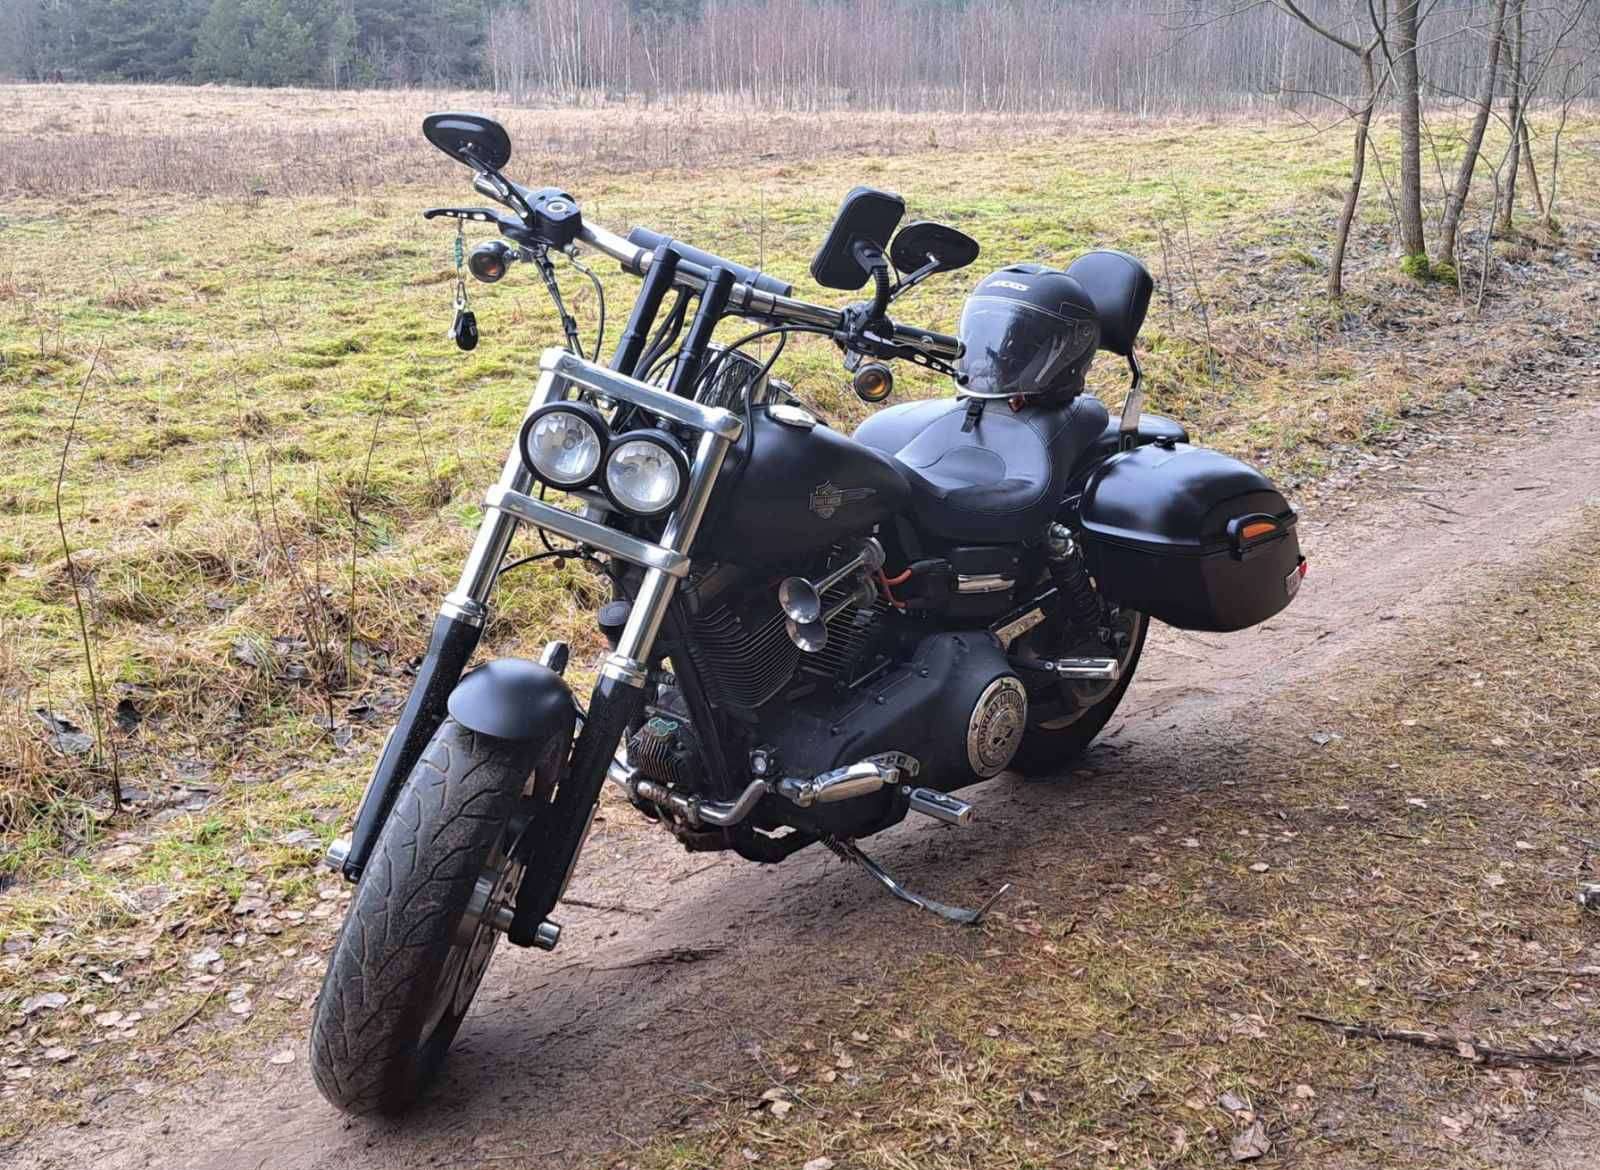 Купить мотоцикл Harley-Davidson Dyna в Беларуси в кредит - цены, характеристики, фото. в Беларуси в кредит